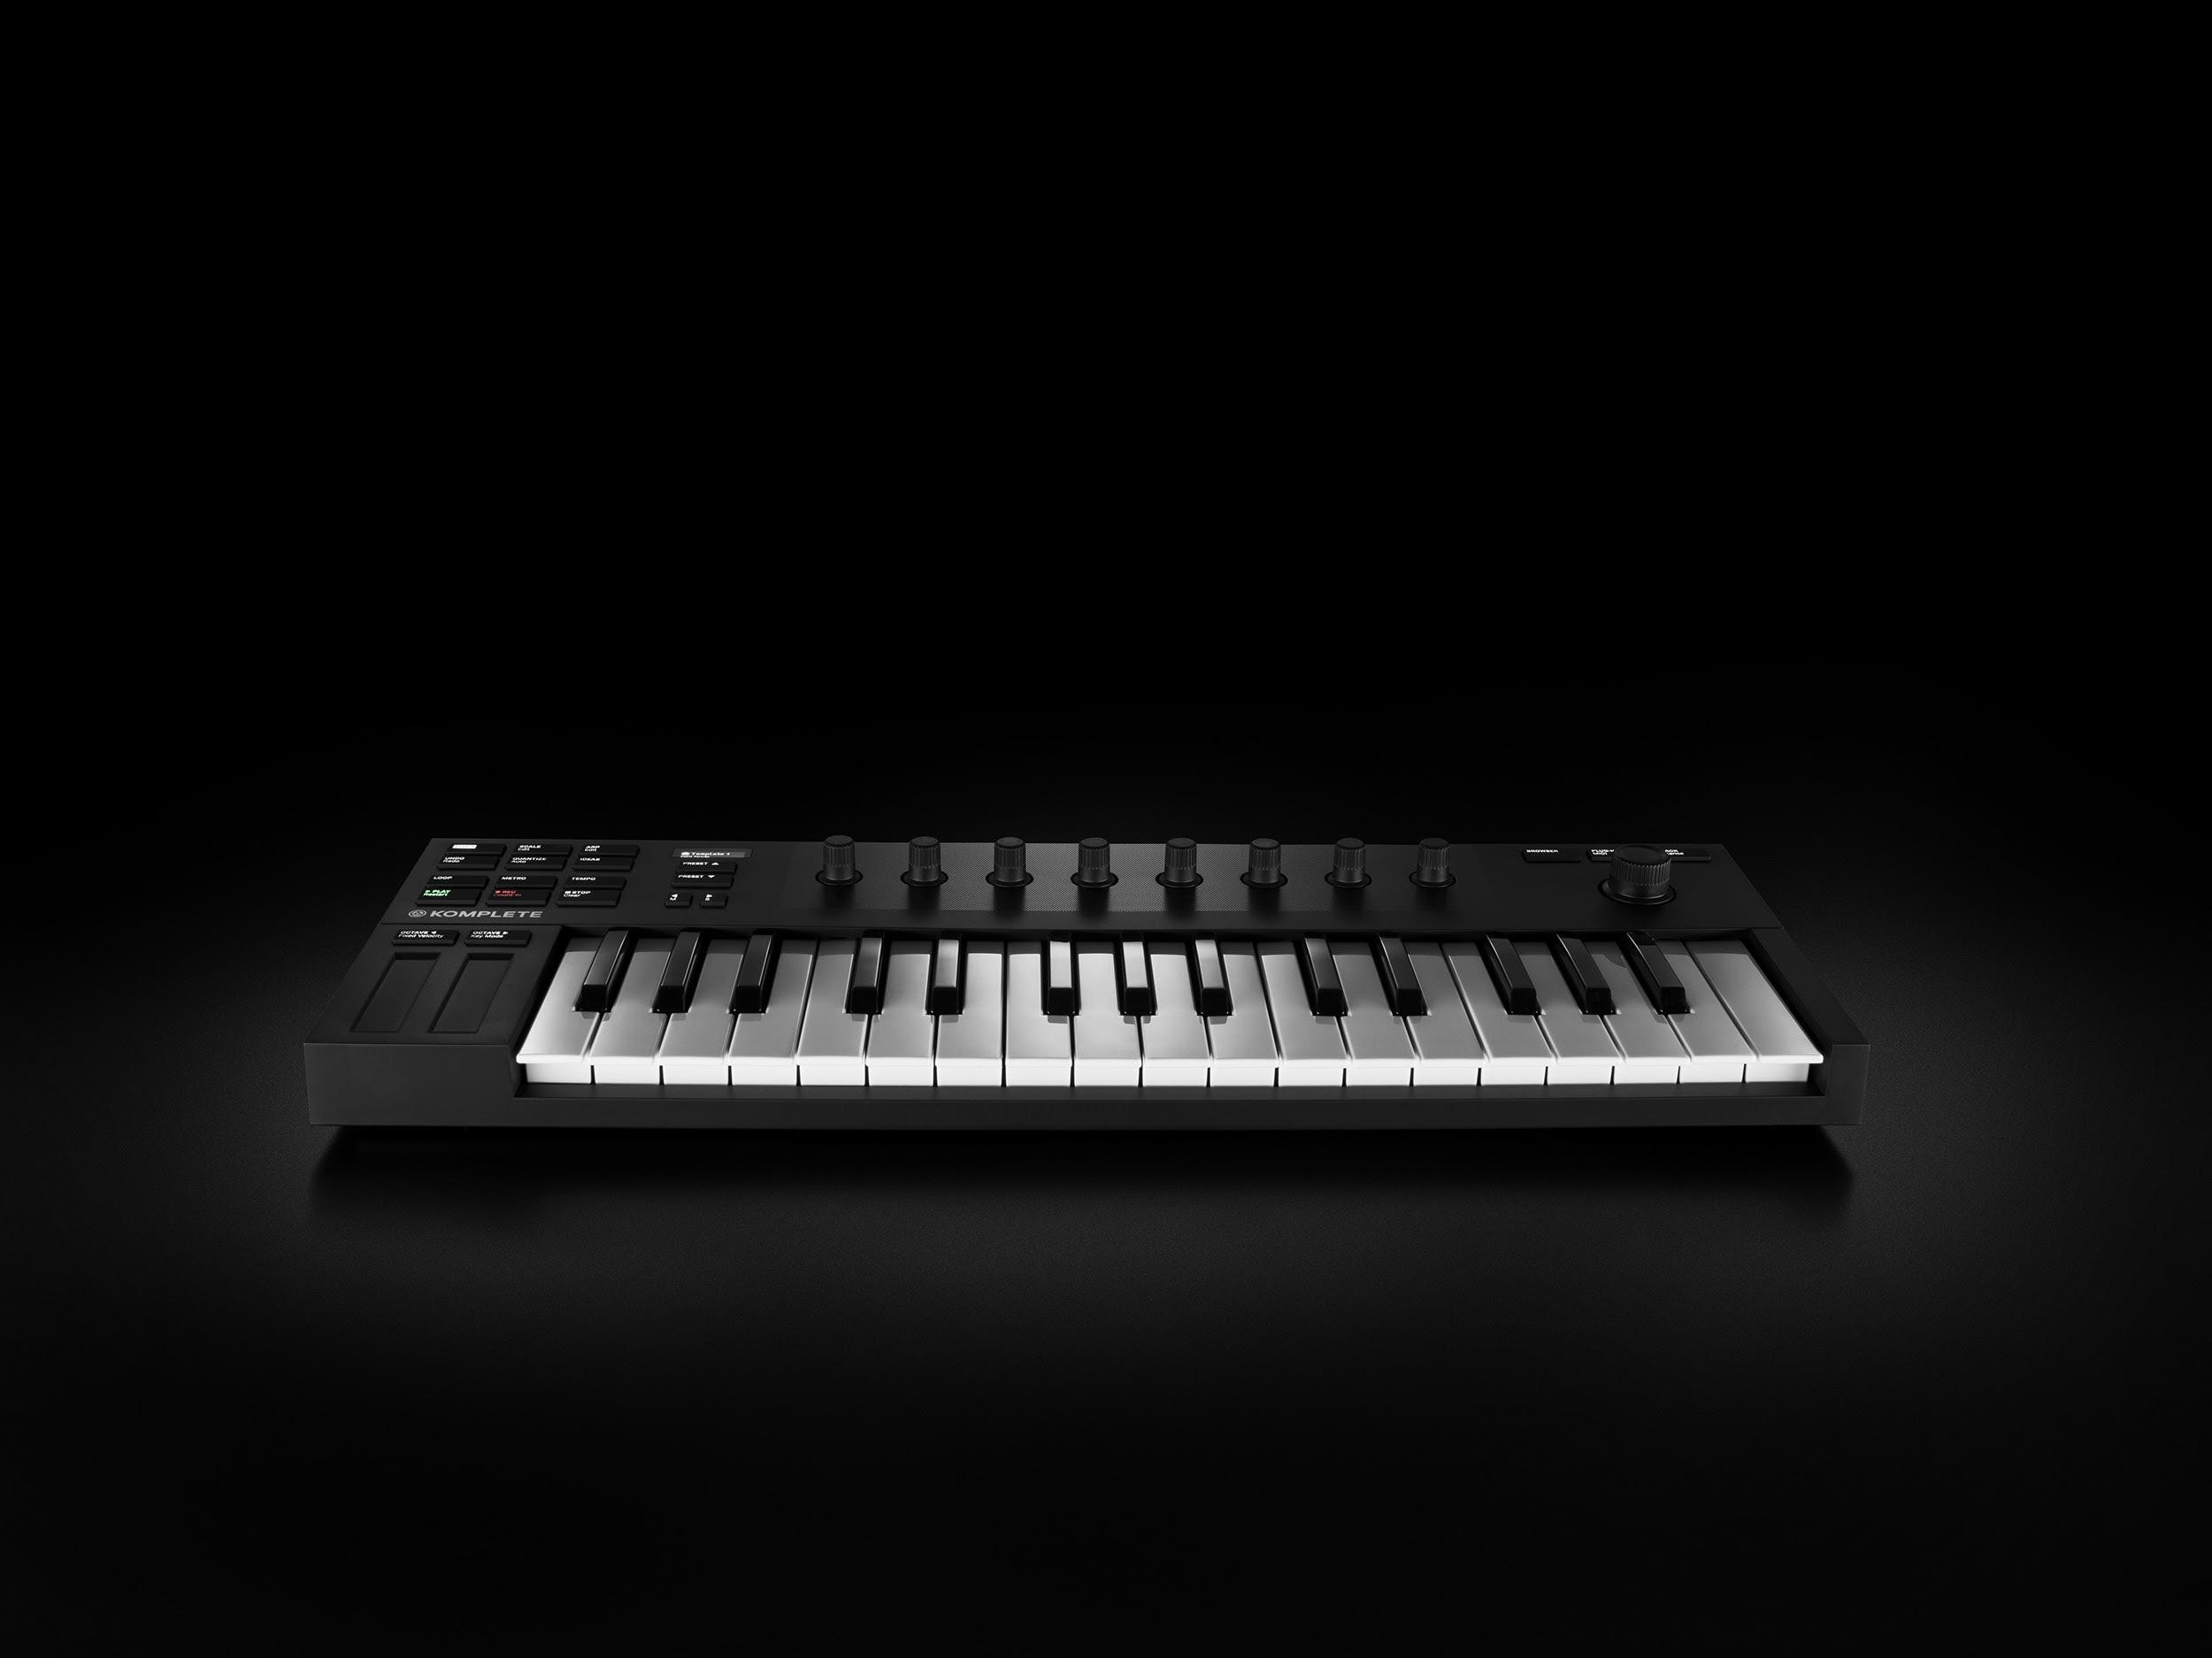 Das Keyboard Komplete Kontrol M32 von Native Instruments